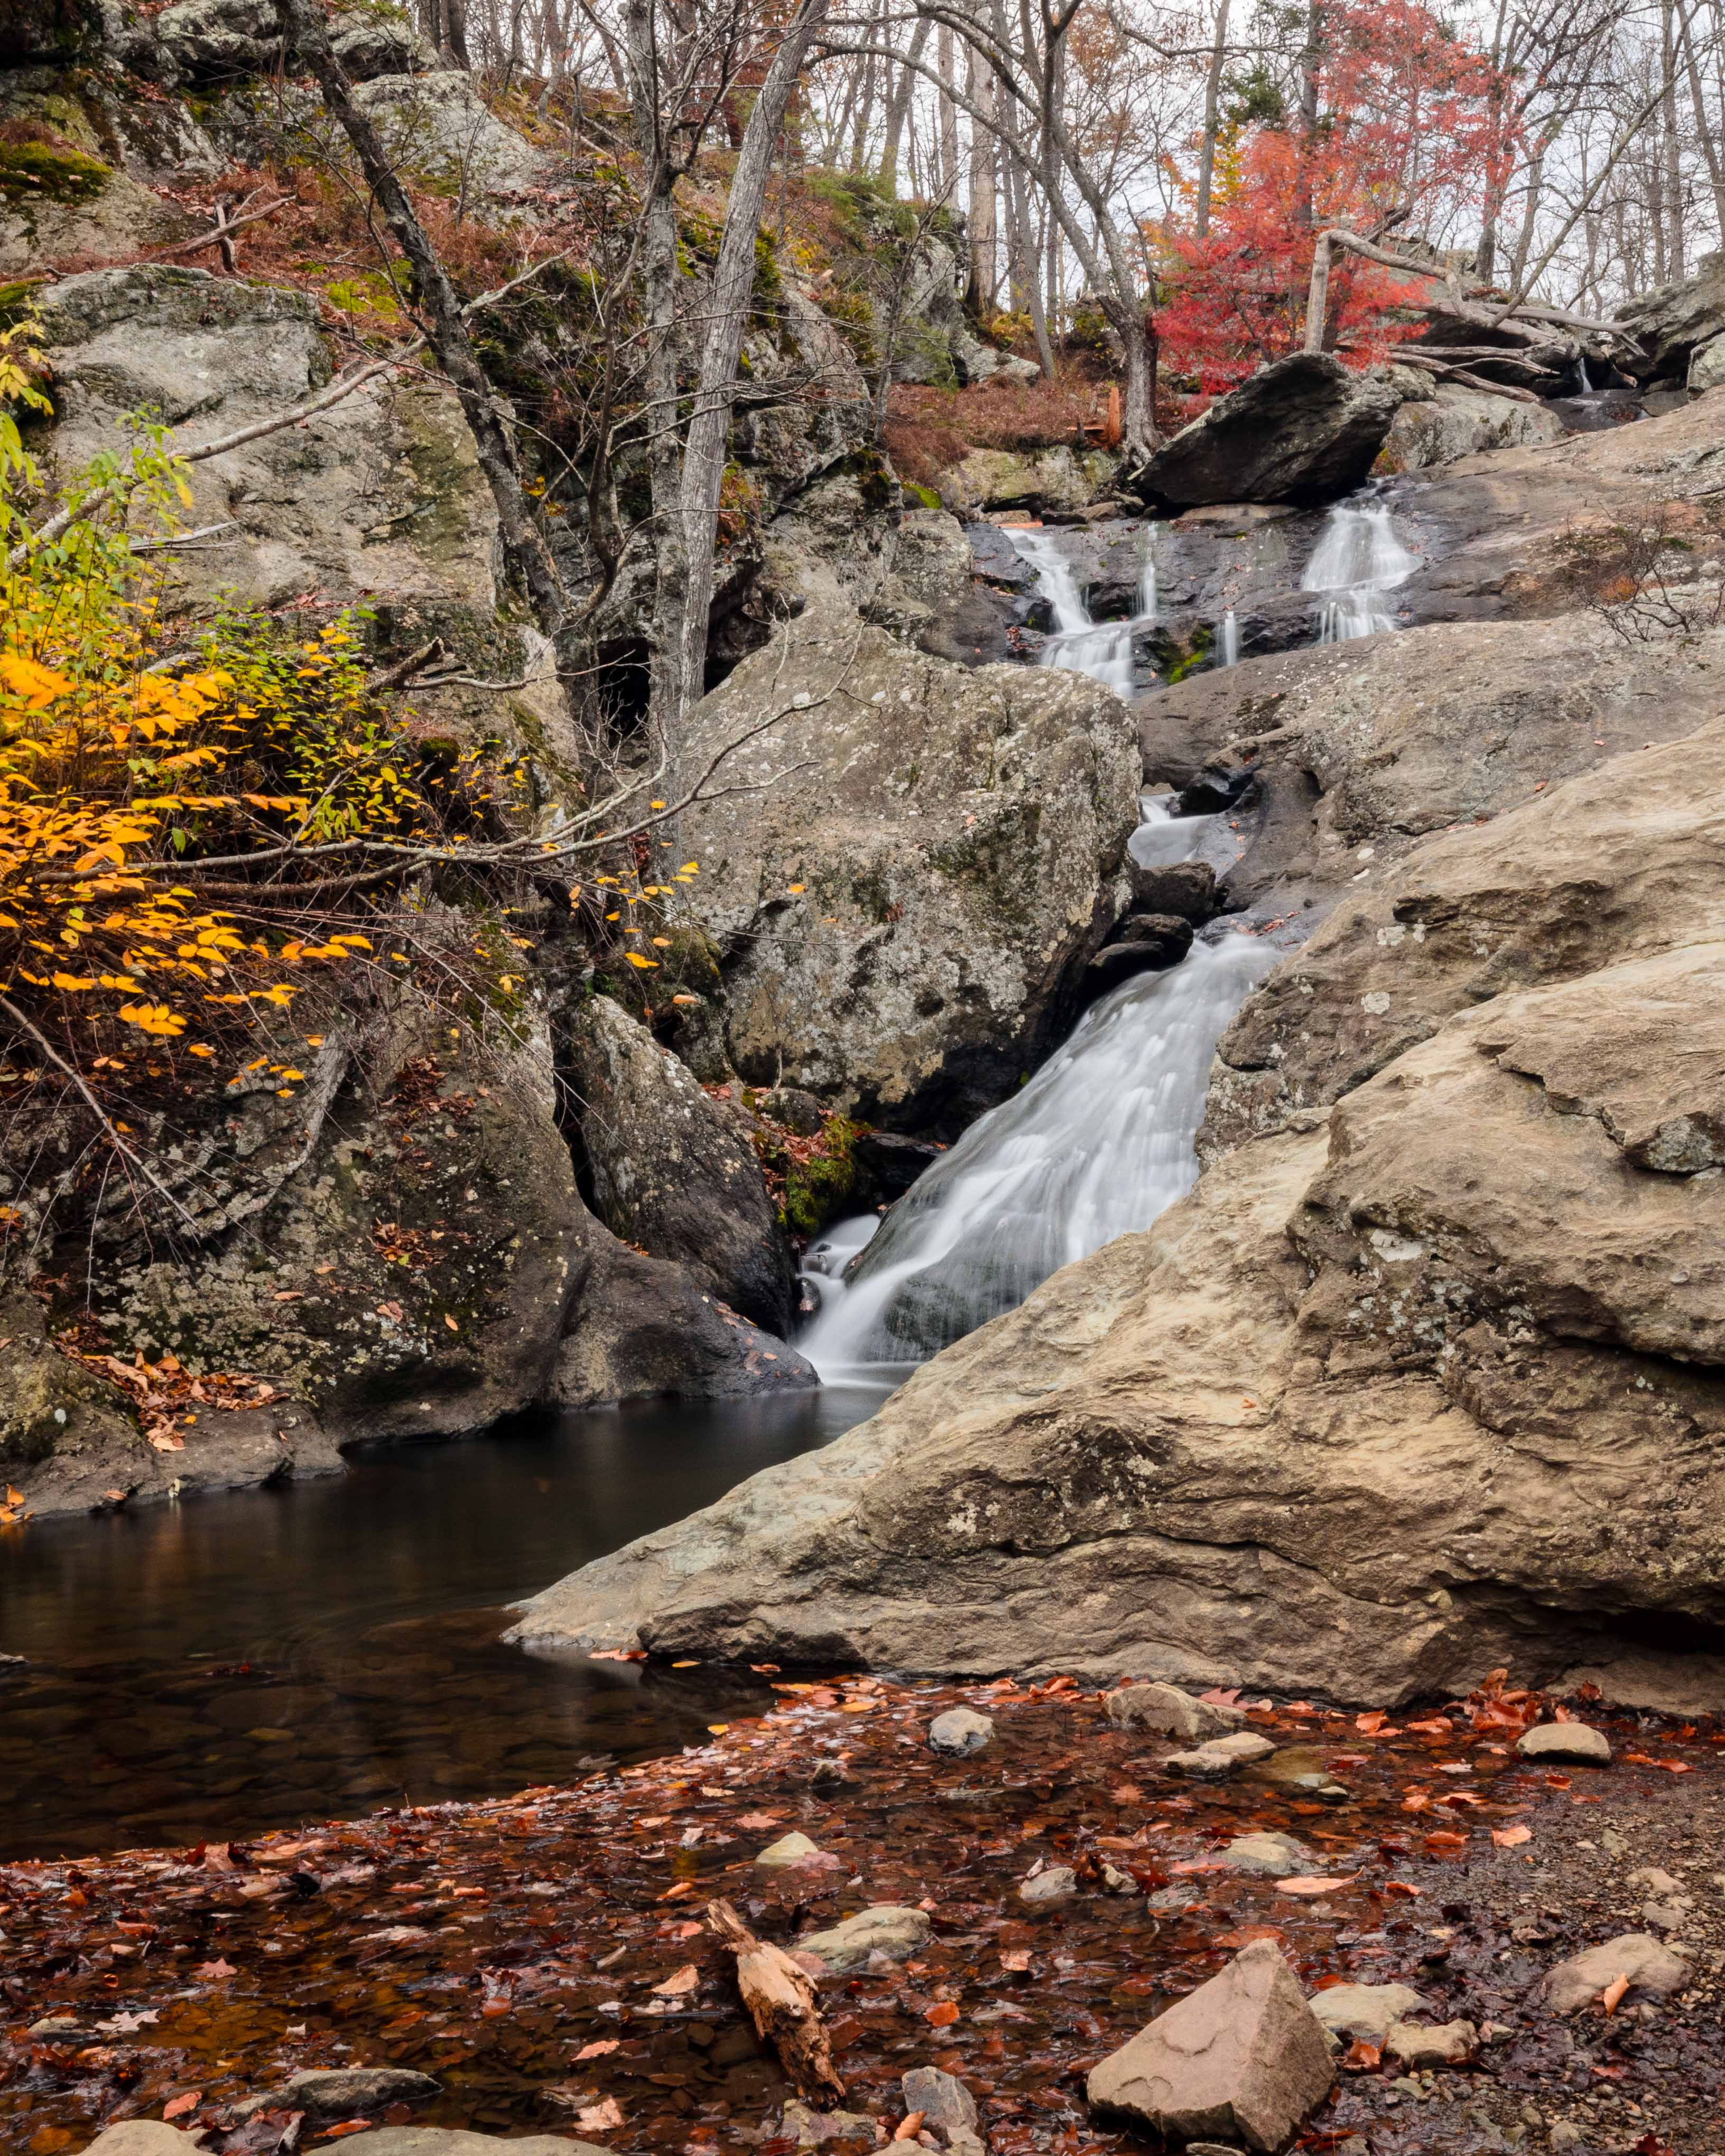 Cunningham Falls in the autumn